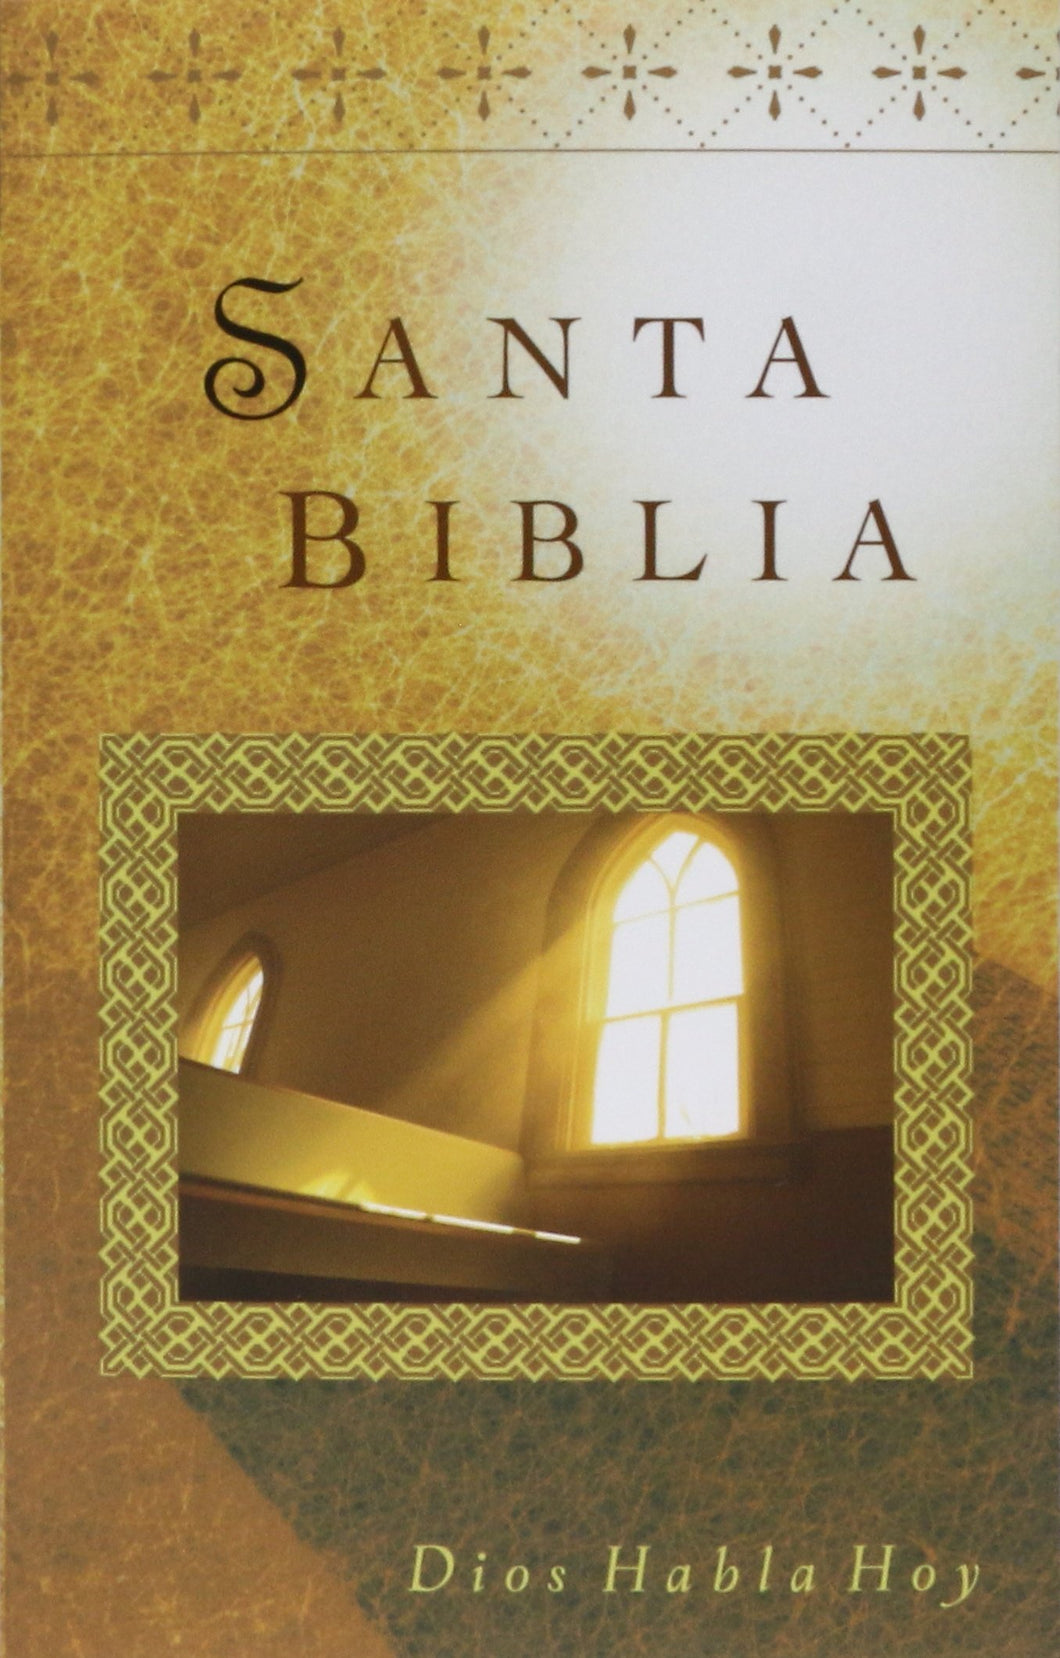 SANTA BIBLIA DIOS HABLA HOY